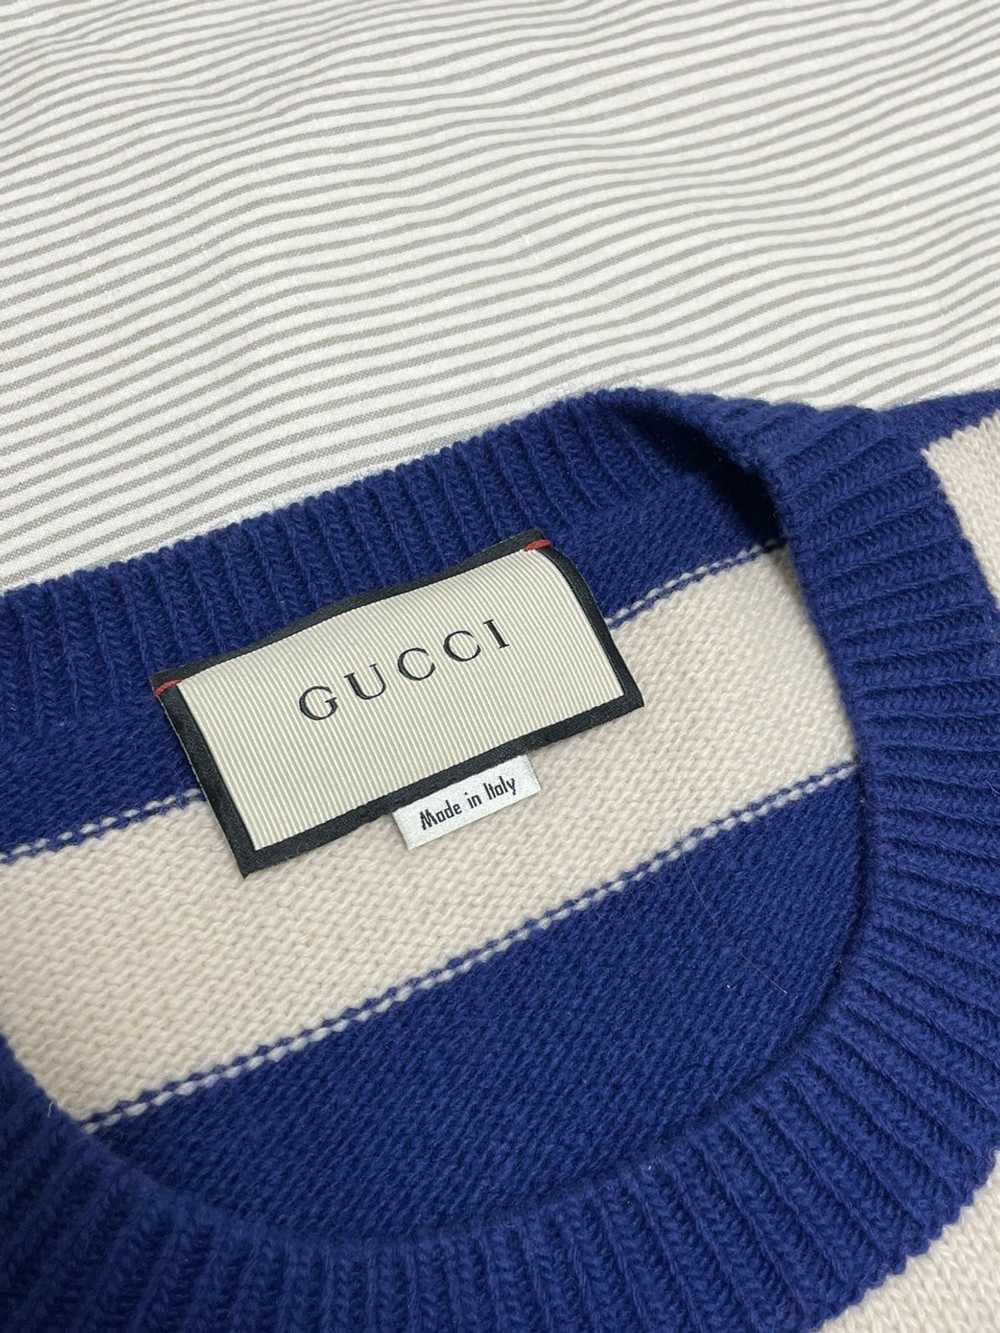 Gucci Gucci Tiger Intarsia "LOVED" Striped Pullov… - image 5